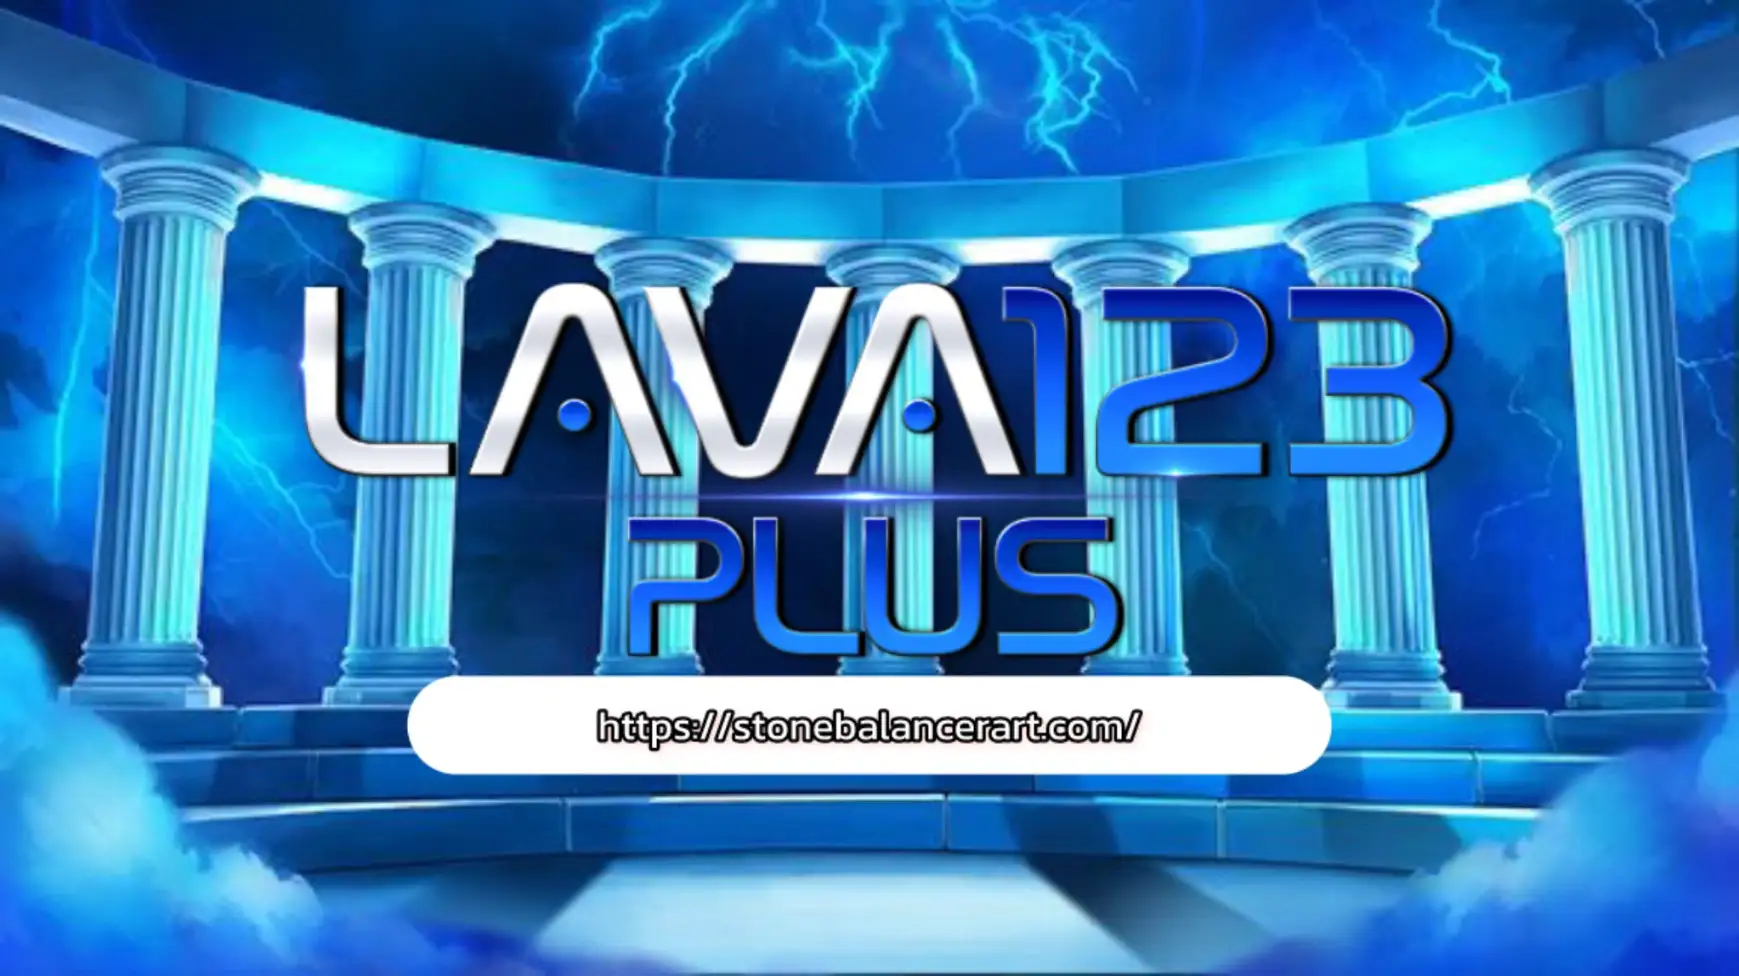 เพลิดเพลินกับเกมสล็อตที่มีความสนุกสุดเข้มกับ Lava123plus สุดพิเศษ!